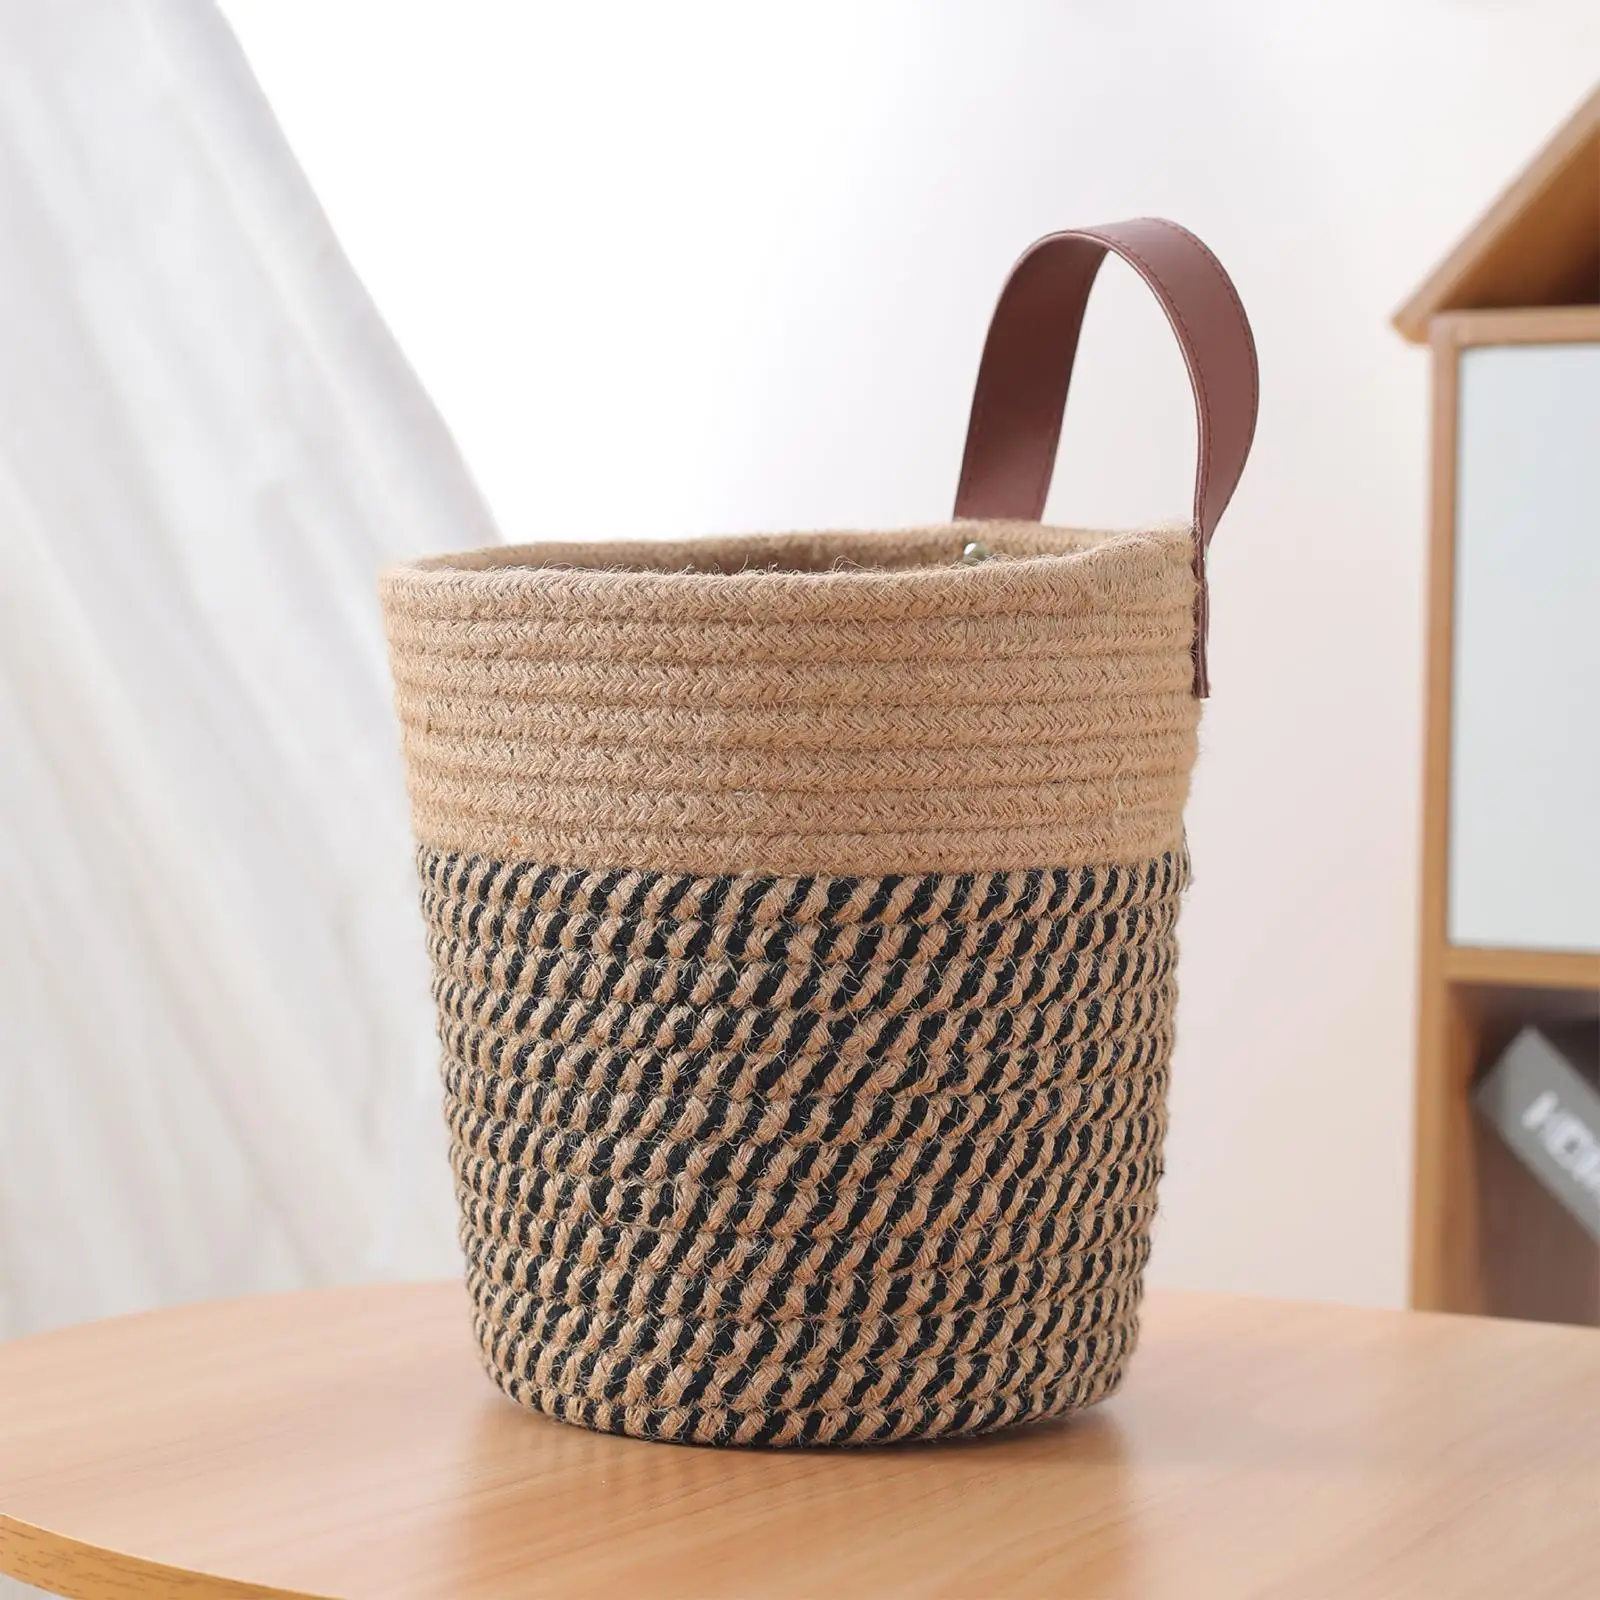 Hand Woven Basket Tabletop Multifunctional for Kitchen Bedroom Bathroom Countertops Container PU Handle Desktop Storage Basket